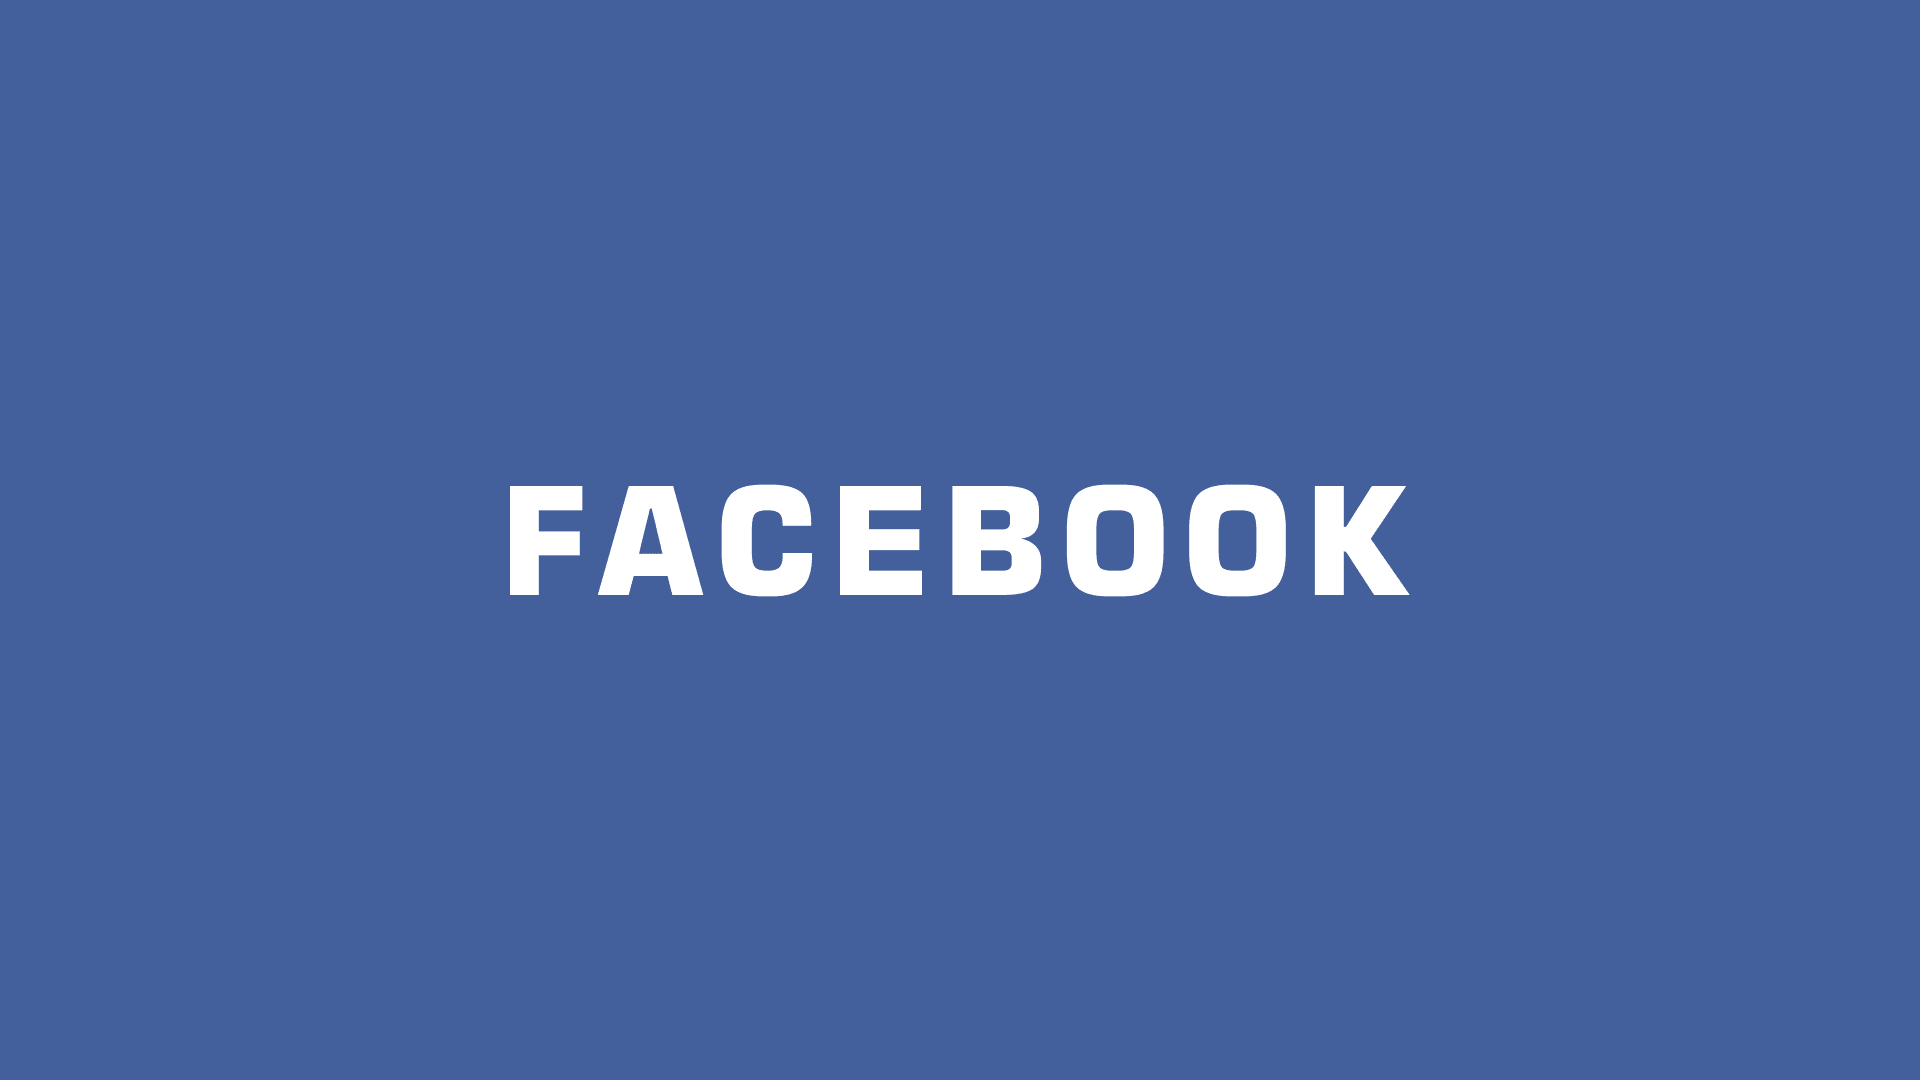 臉書 Facebook 新表情符號 – :) 與新商機